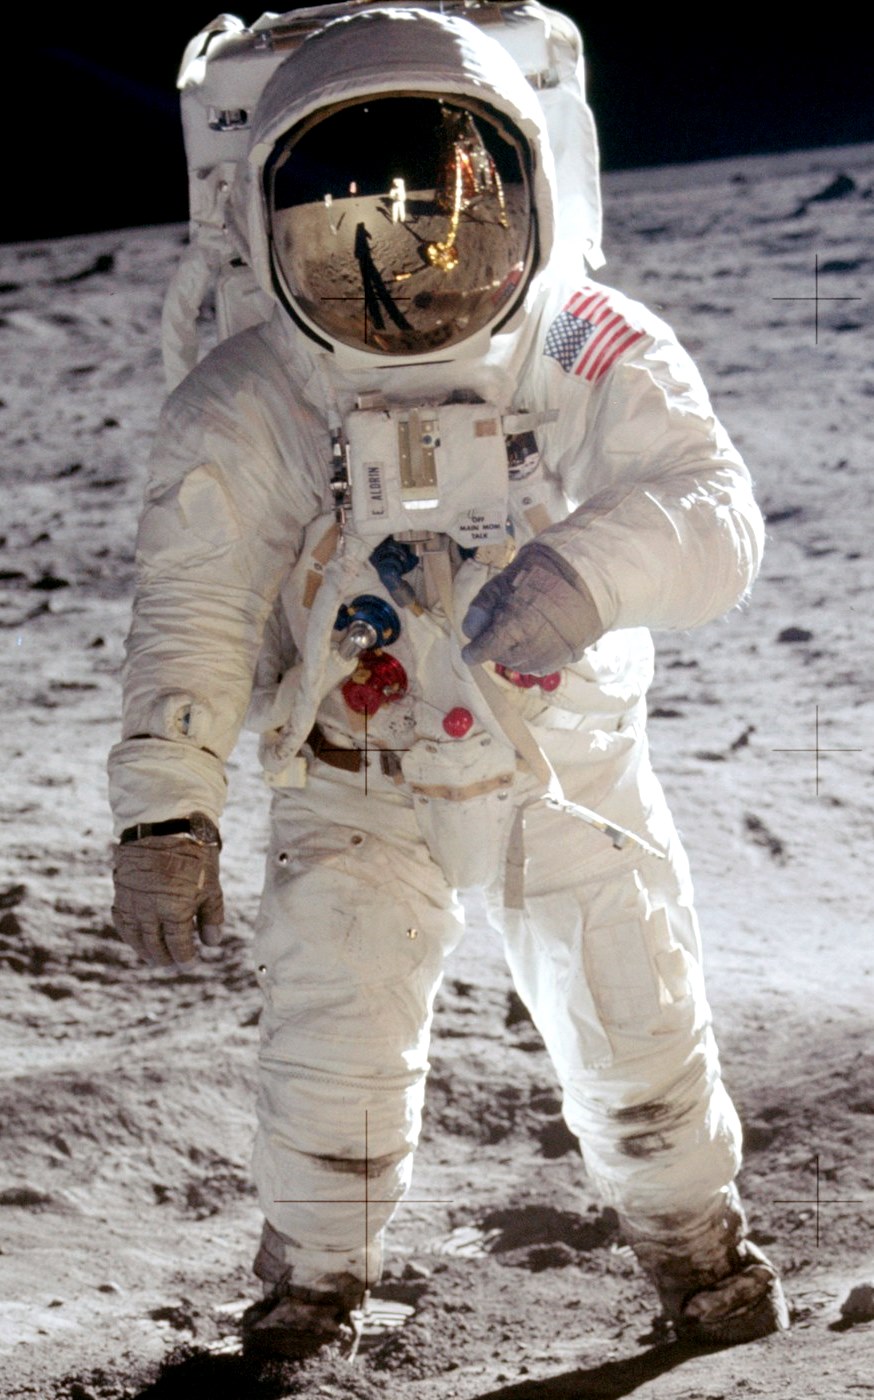 Astronaut Buzz Aldrin of the Apollo space program